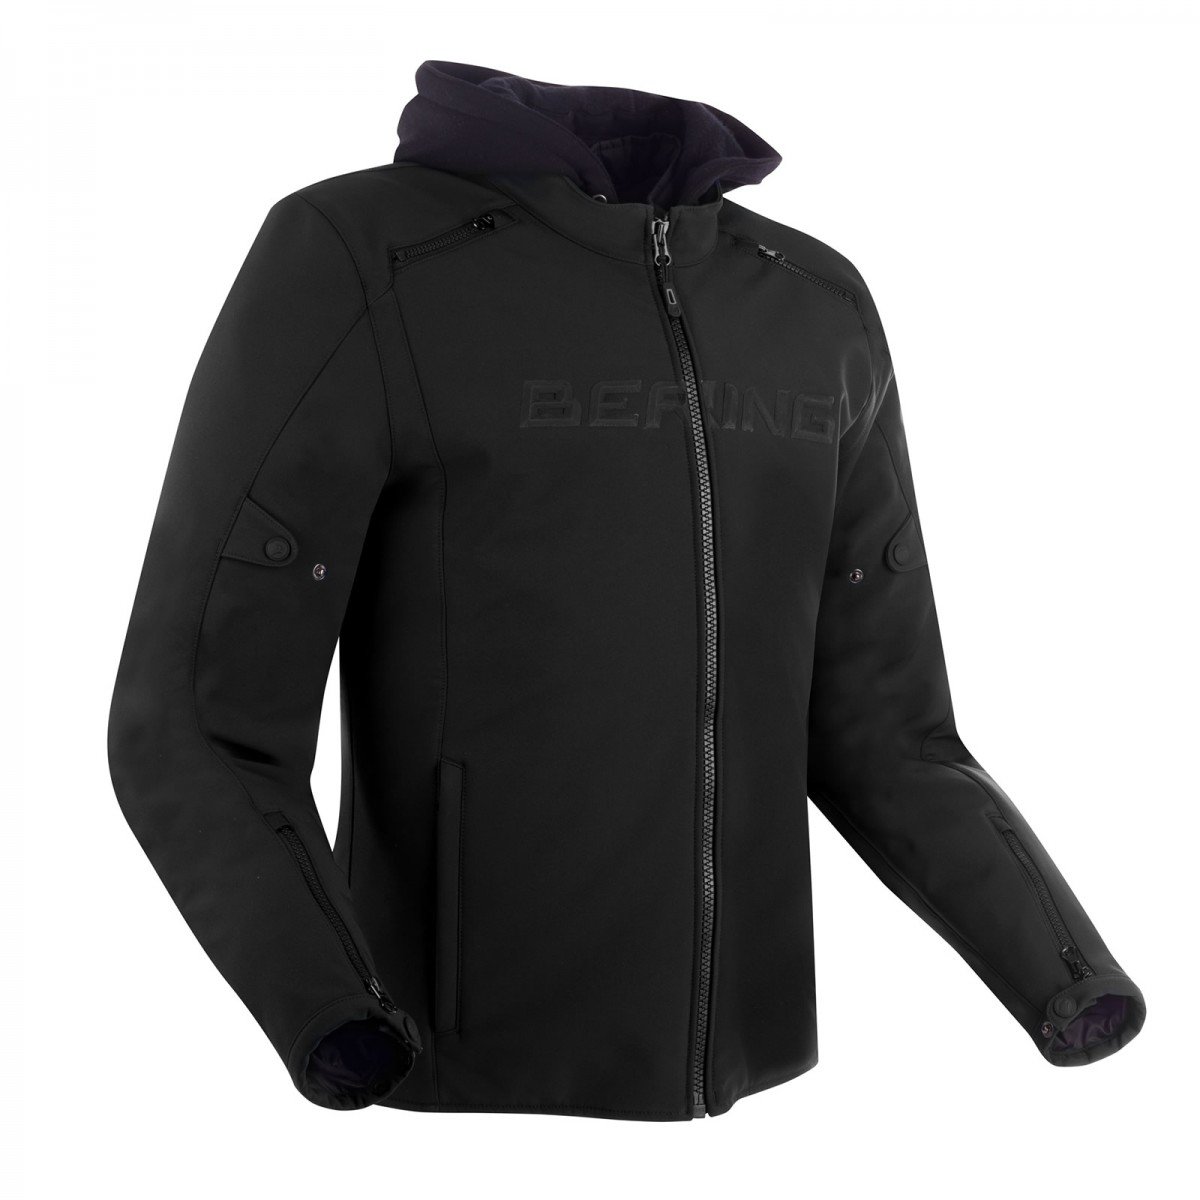 Image of Bering Elite Jacket Black Size 2XL ID 3660815170205